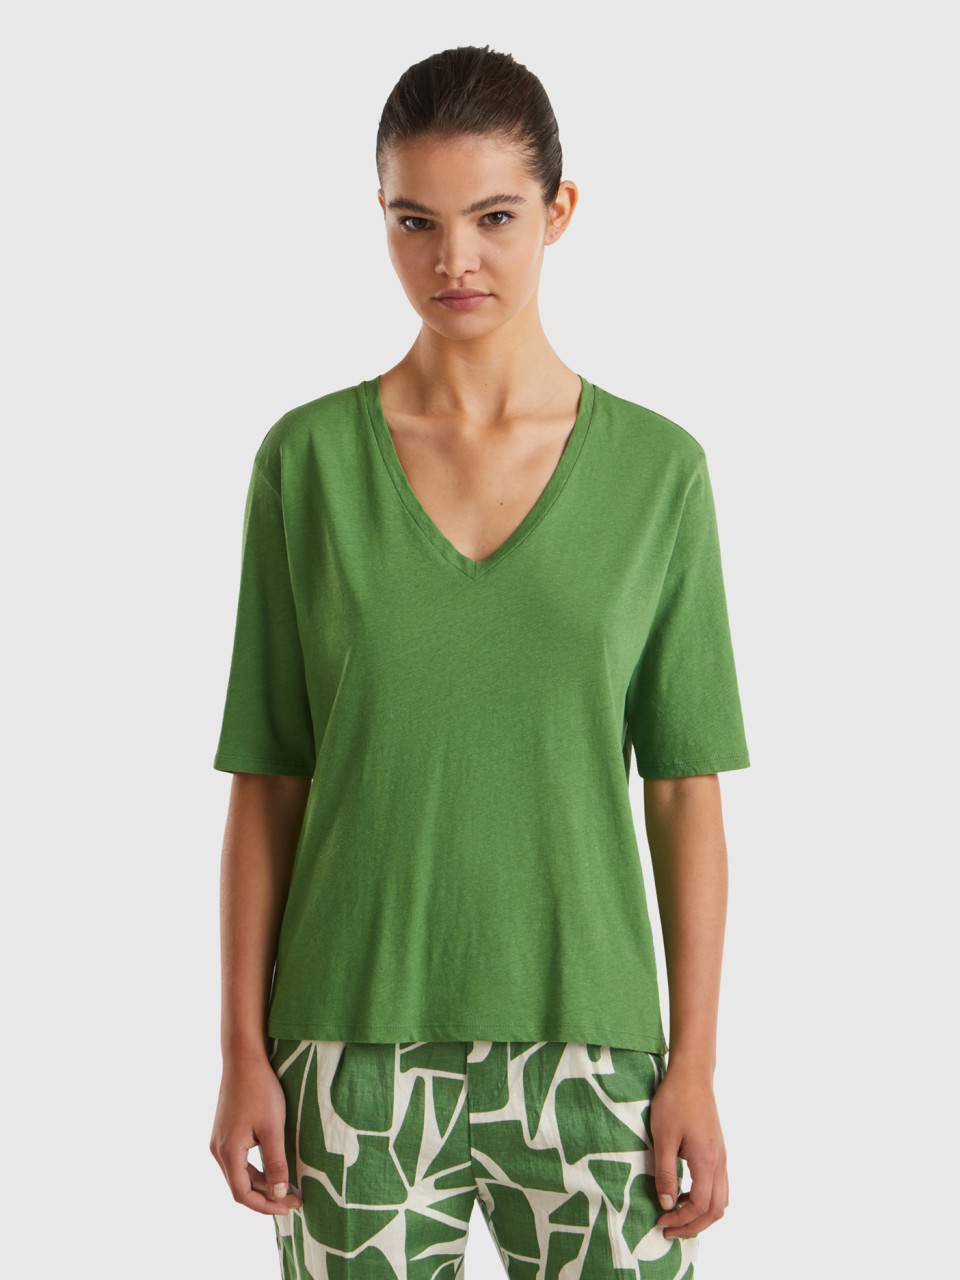 Benetton, T-shirt In Cotton And Linen Blend, Military Green, Women